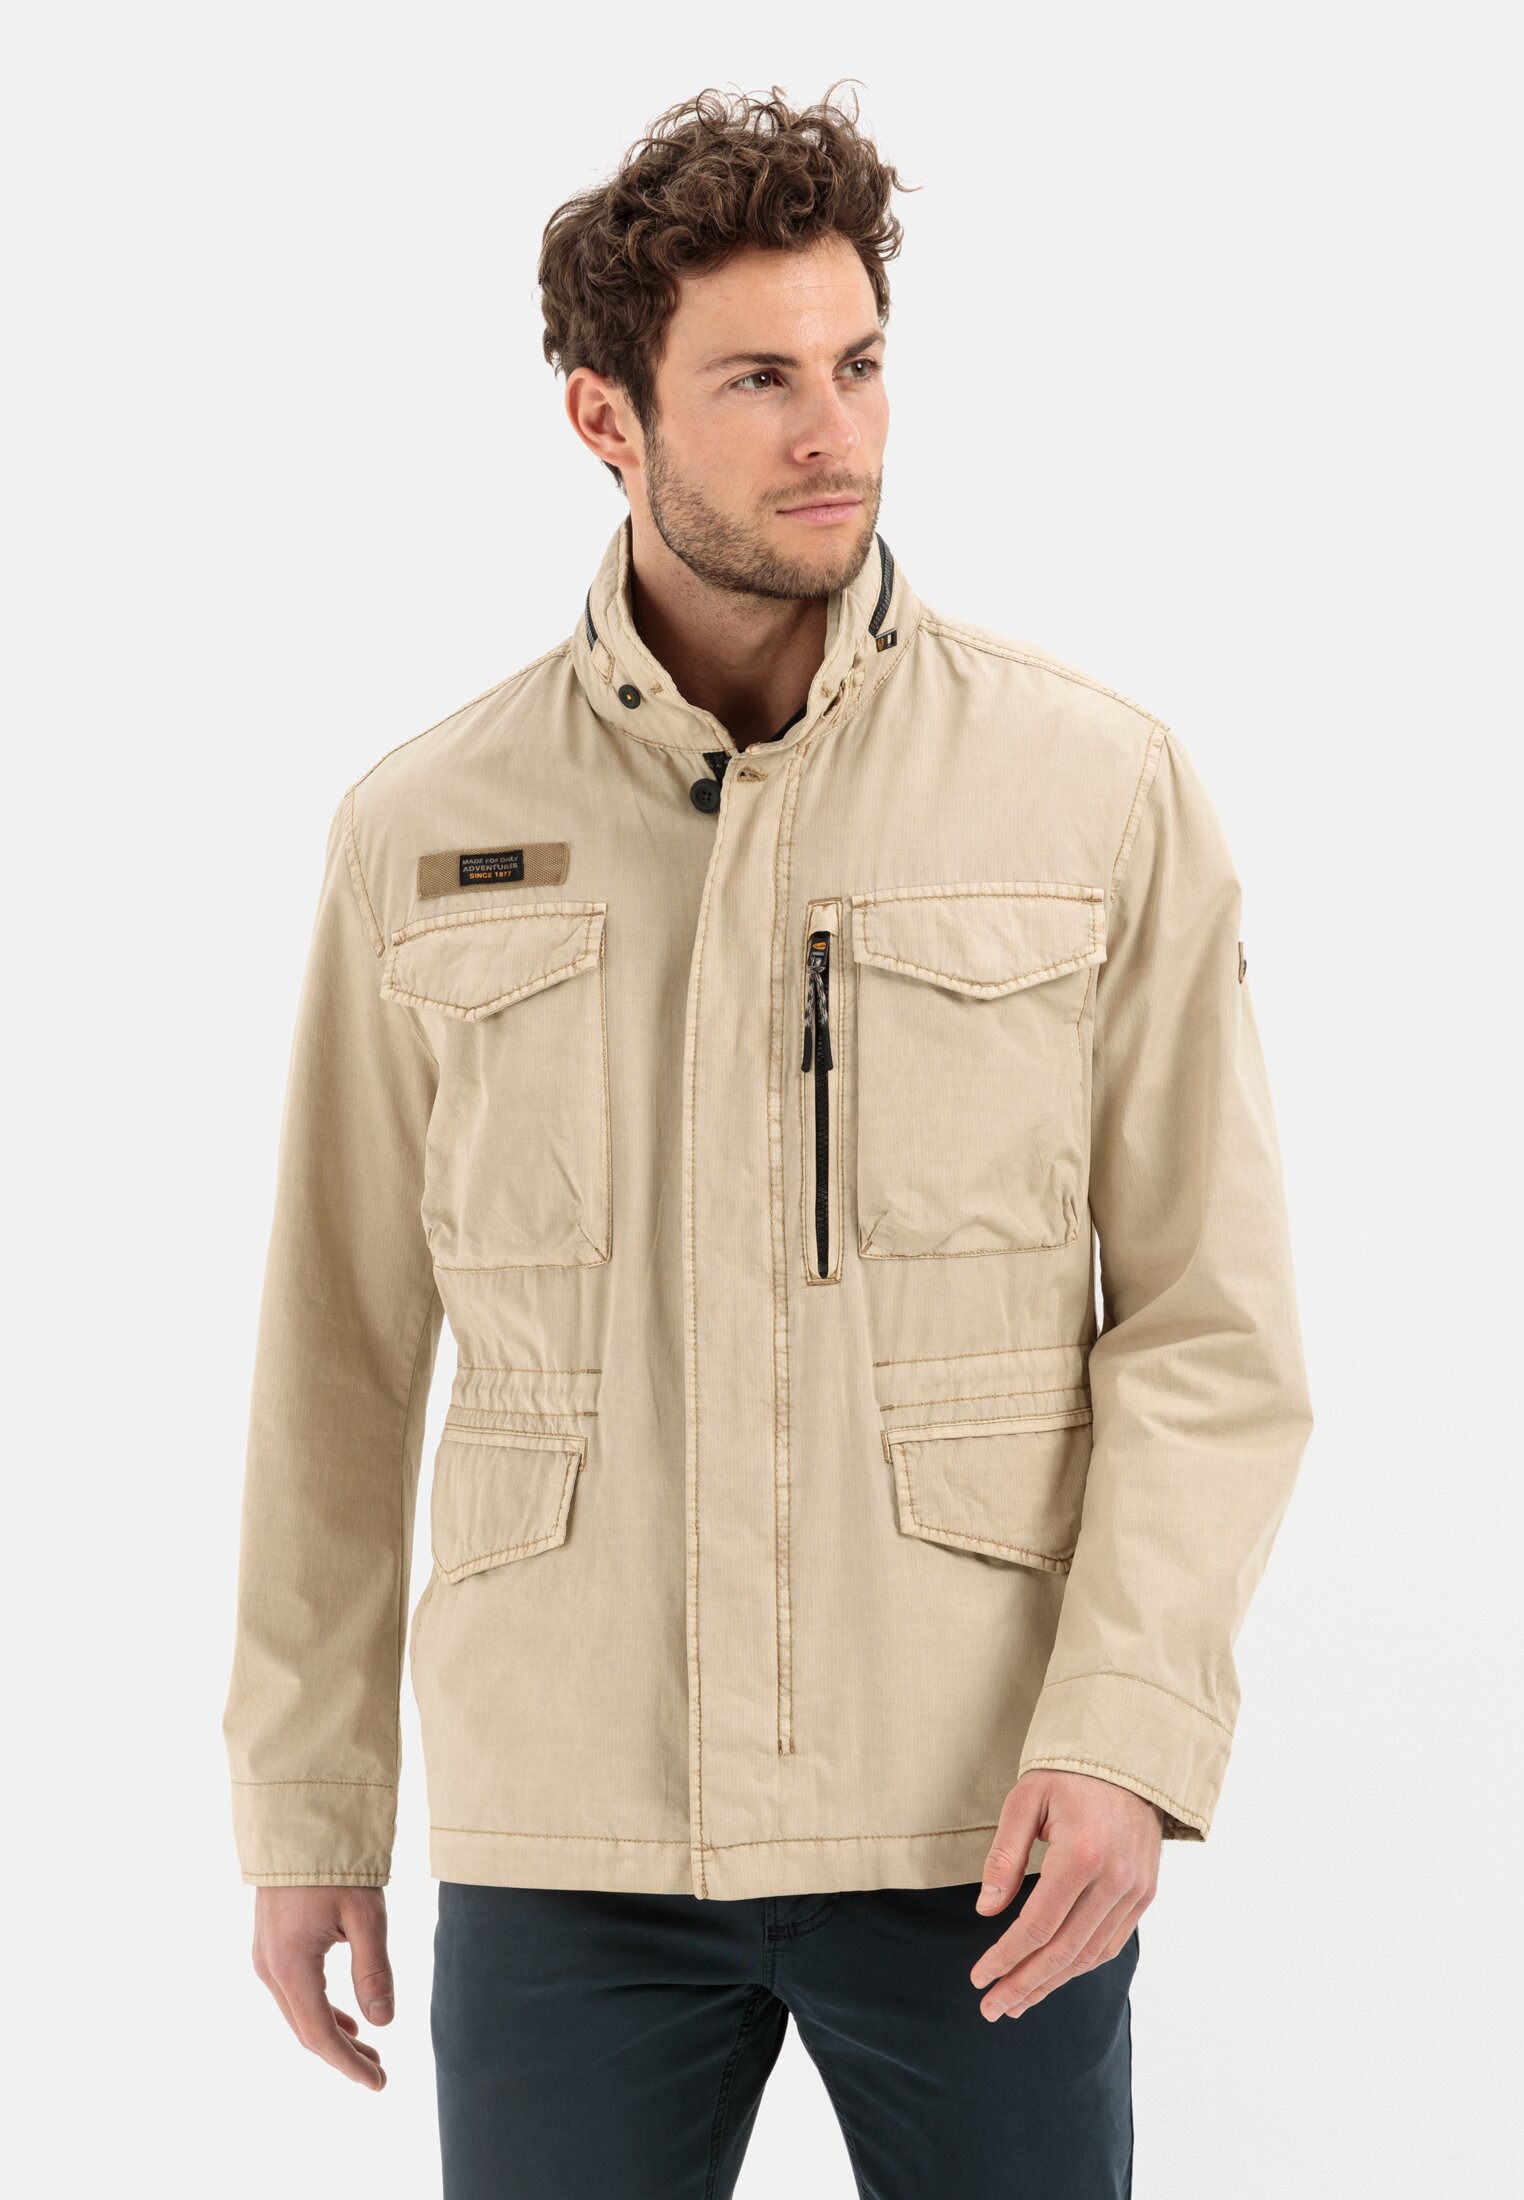 Leichte Jacken für Herren | Outdoor-Ausrüstung | camel active